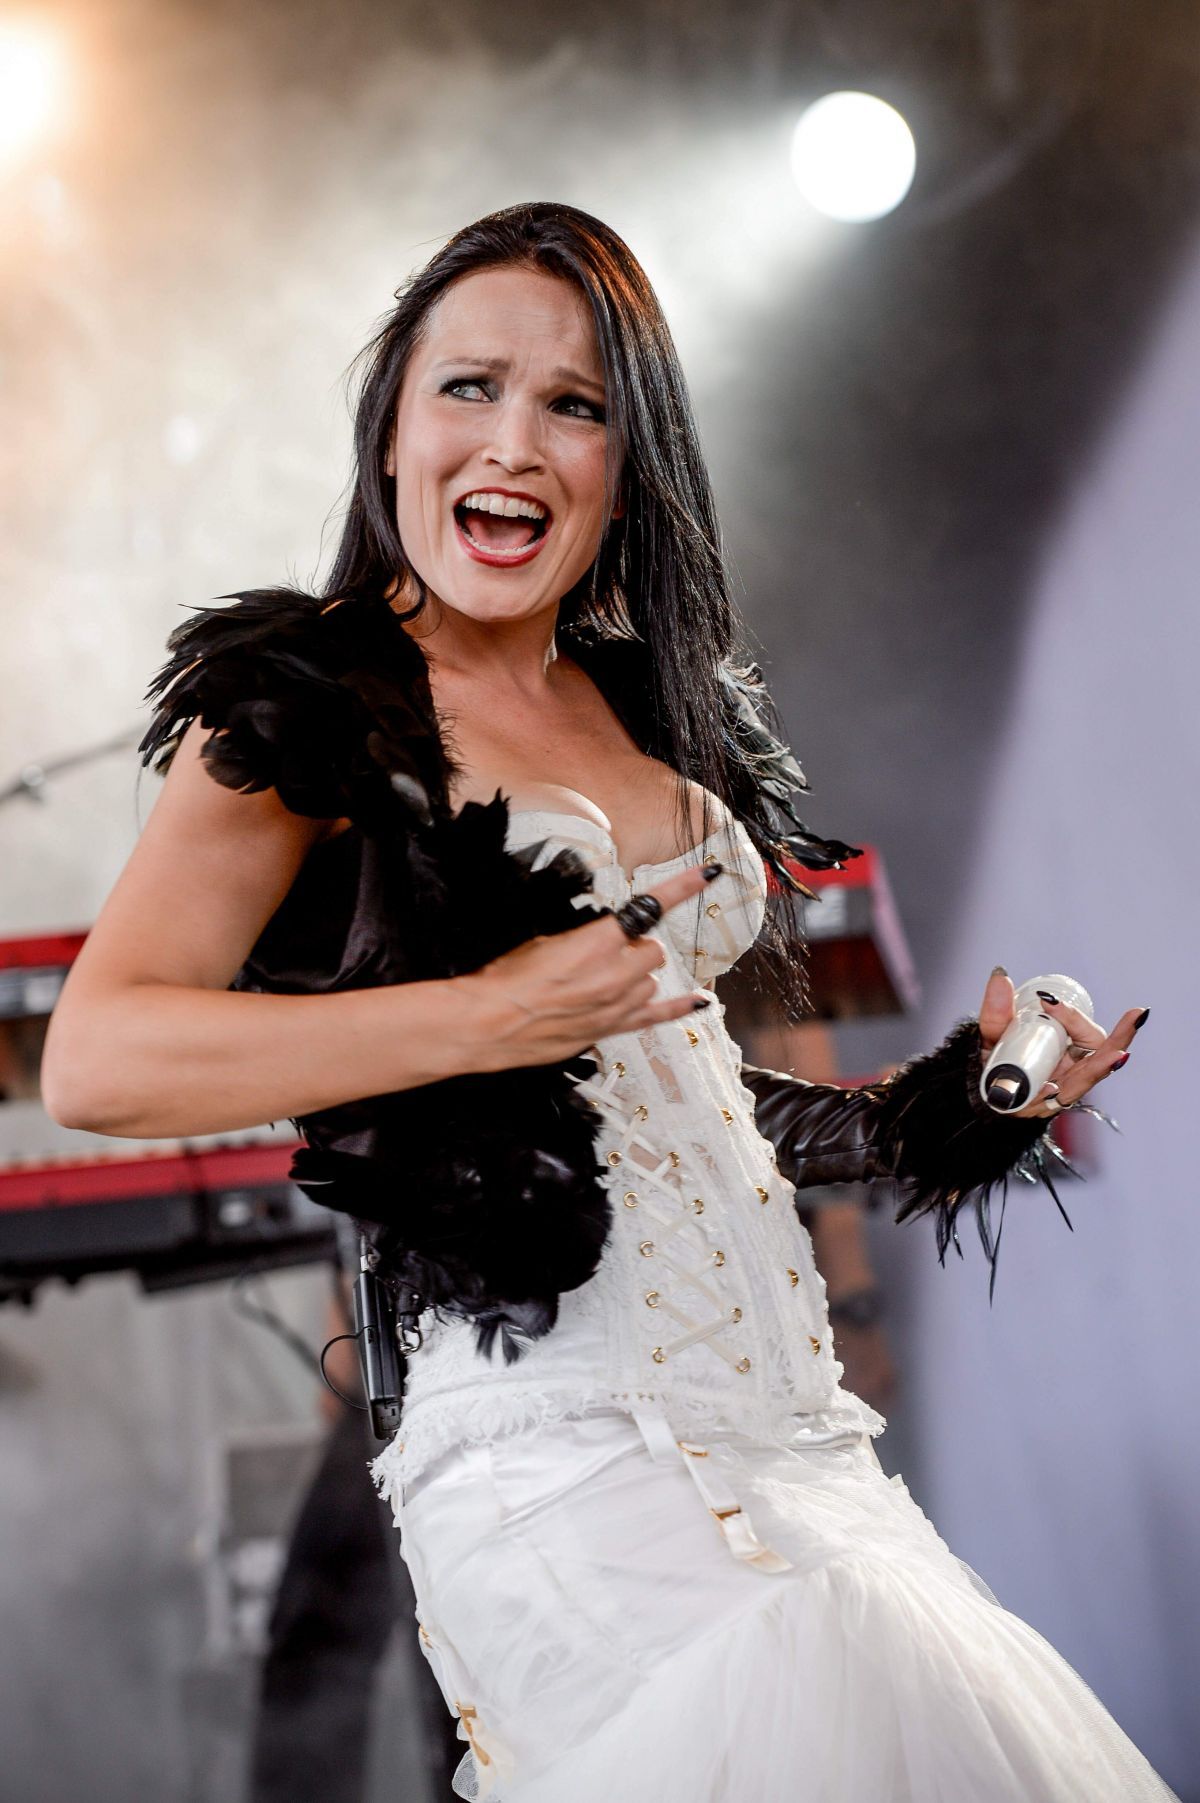 Экс-солистка группы Nightwish Тарья Турунен призналась, что боится пауков и потери голоса 